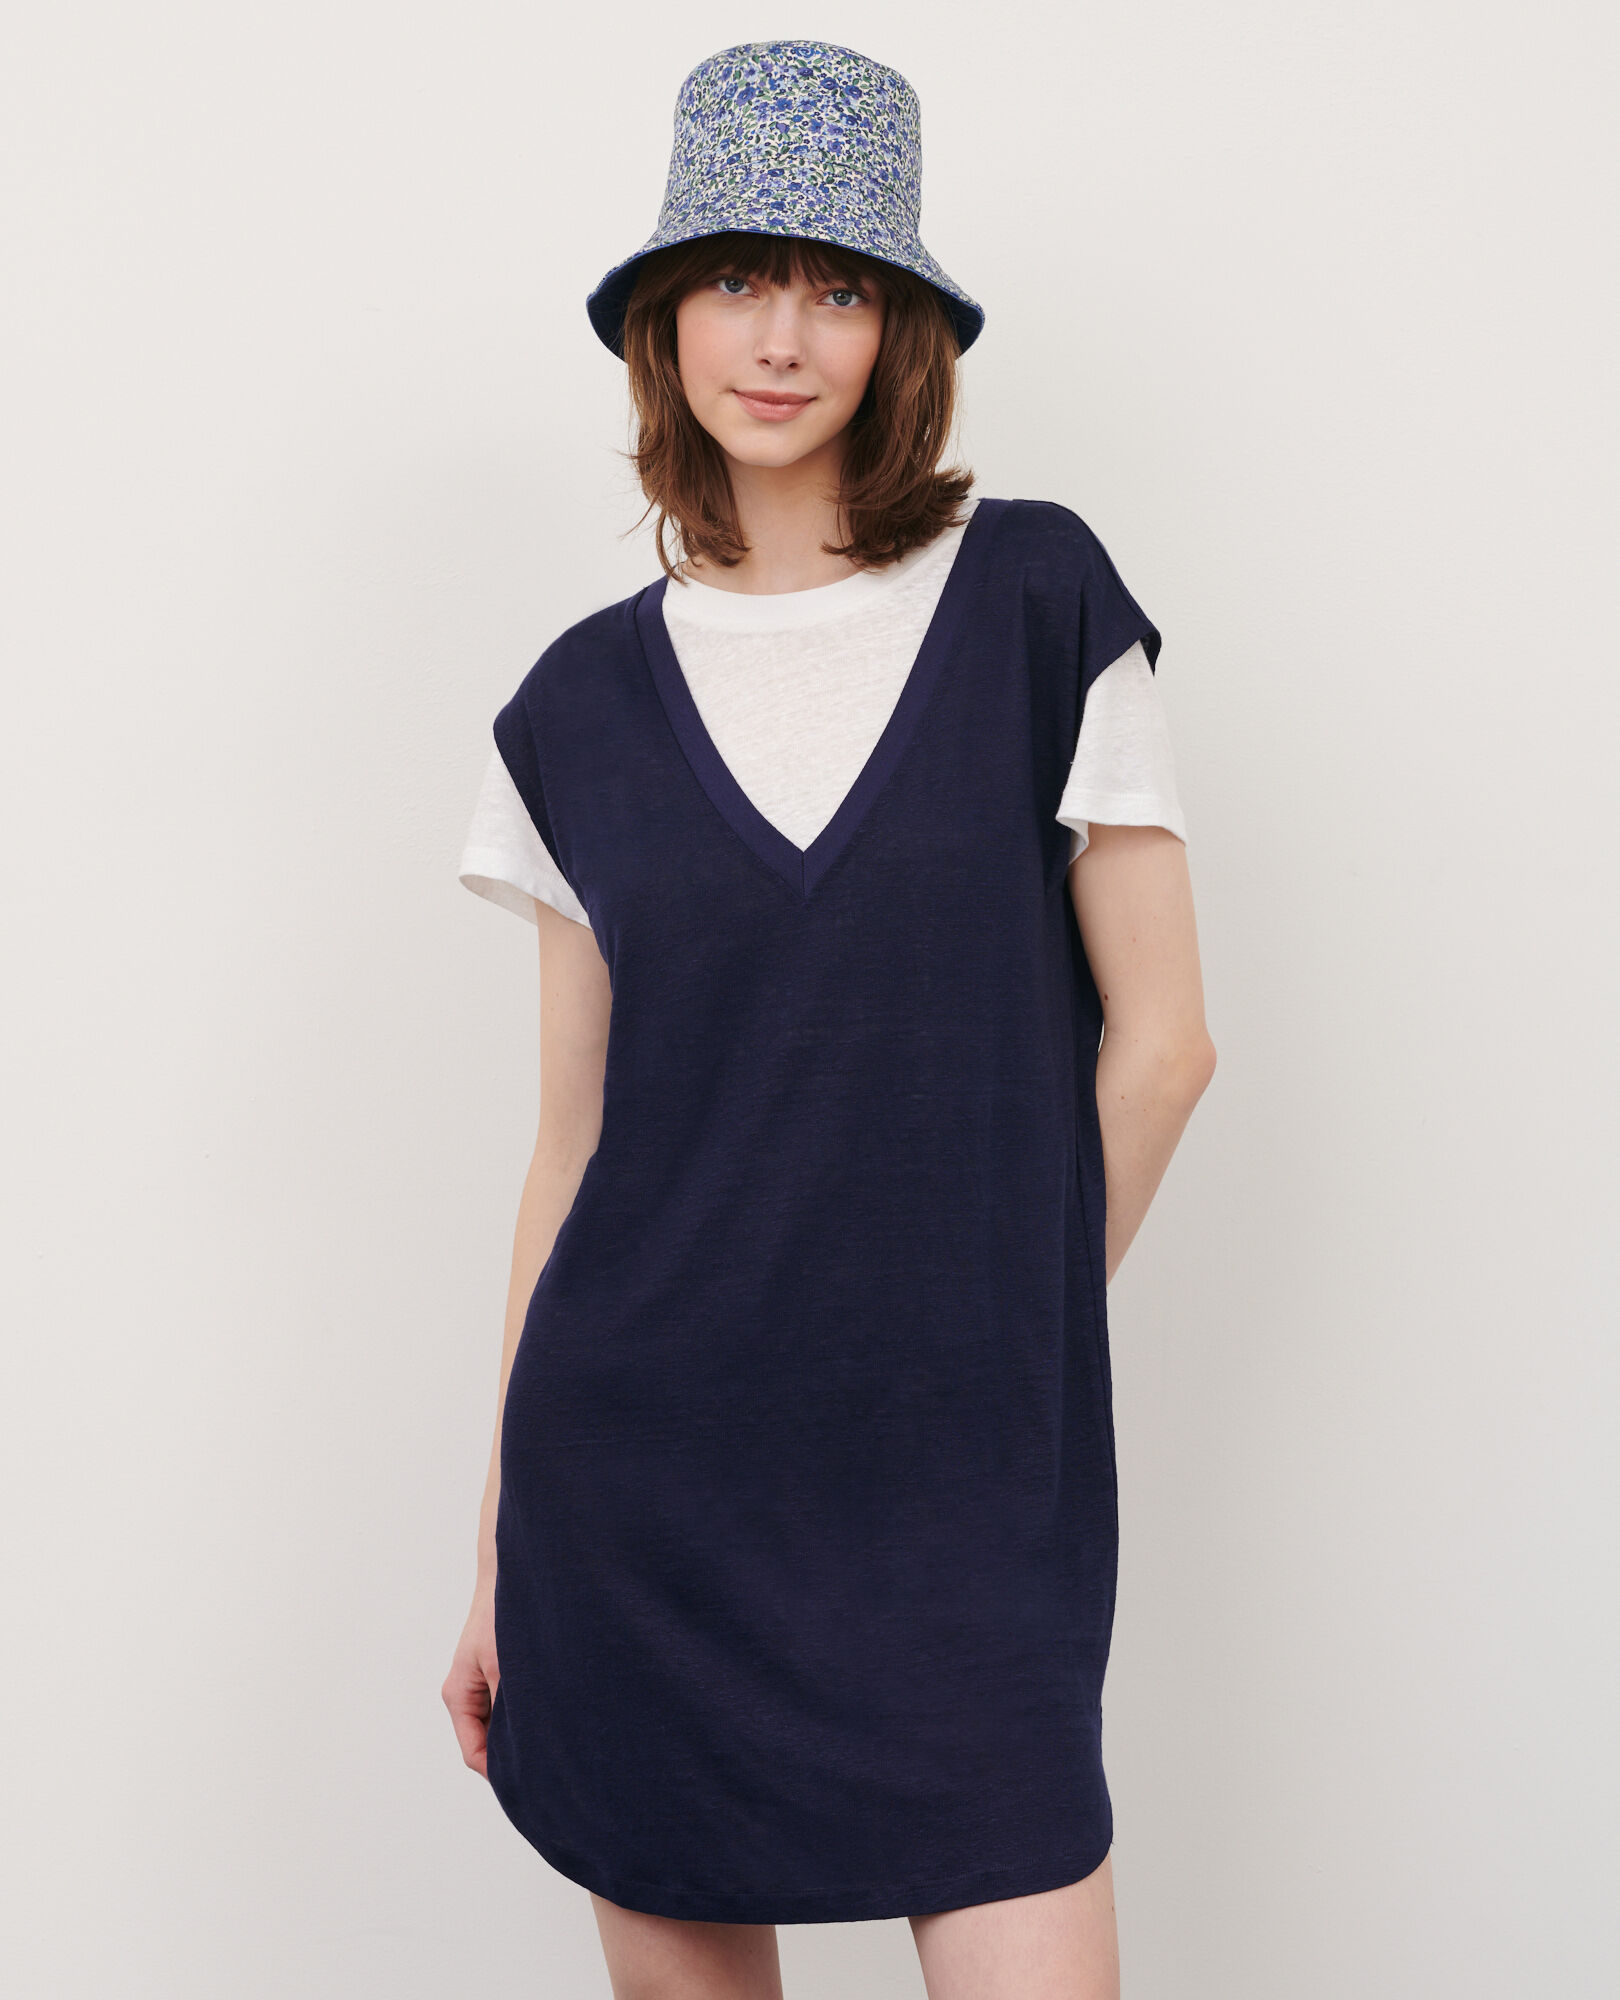 Linen mini dress 68 blue 2sdj350f05